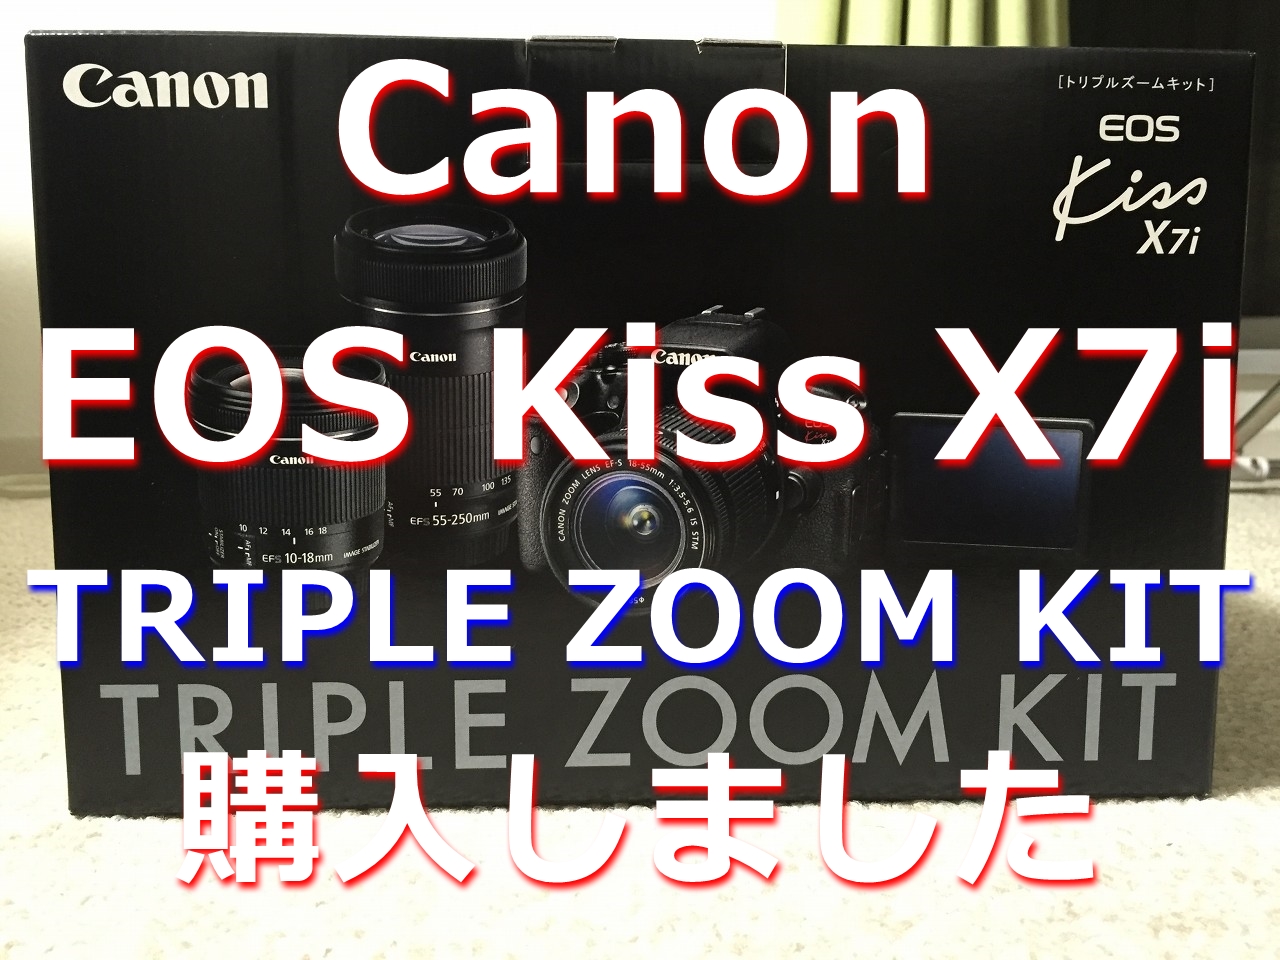 ついに Canon EOS Kiss X7i を購入しました！しかもトリプルズームキット。脱初心者を目指してカメラ小僧になります